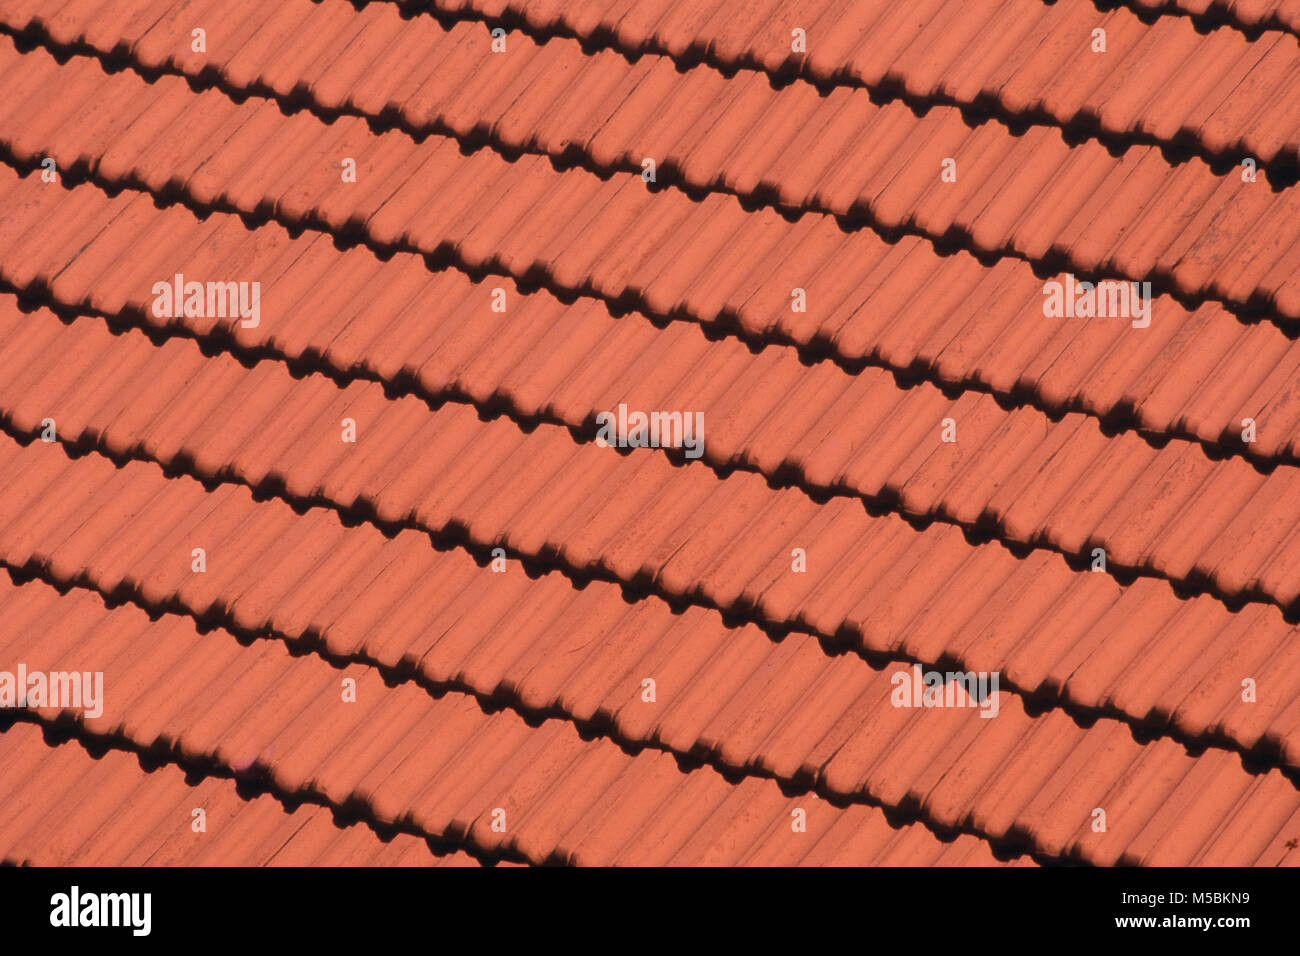 Close up of Mangalore tiled roof at Maharashtra, India Stock Photo